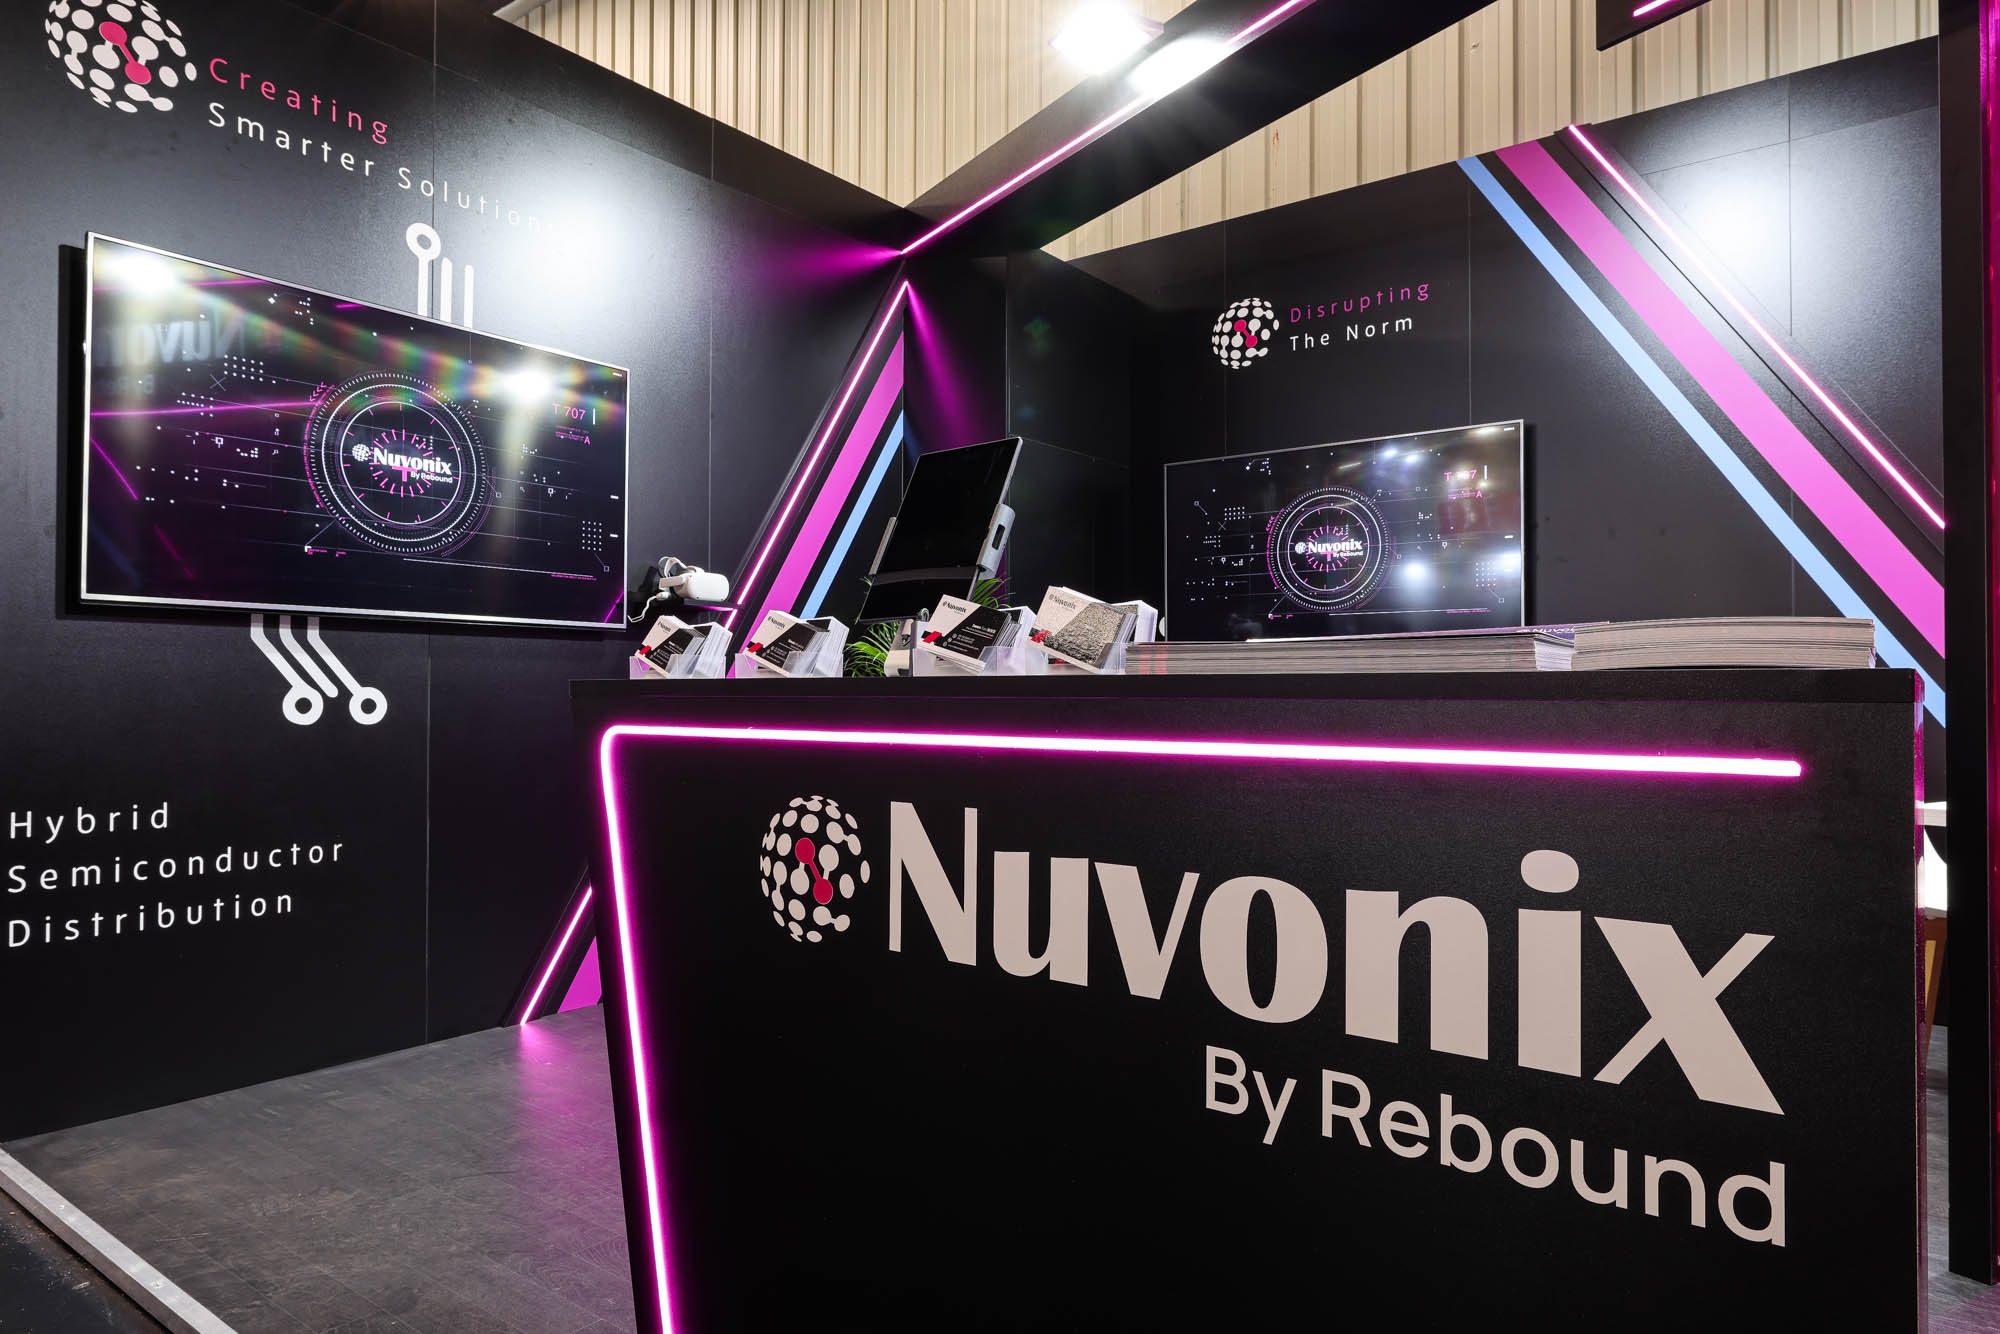 Nuvonix está revolucionando la industria de componentes electrónicos y el modelo de cadena de suministro